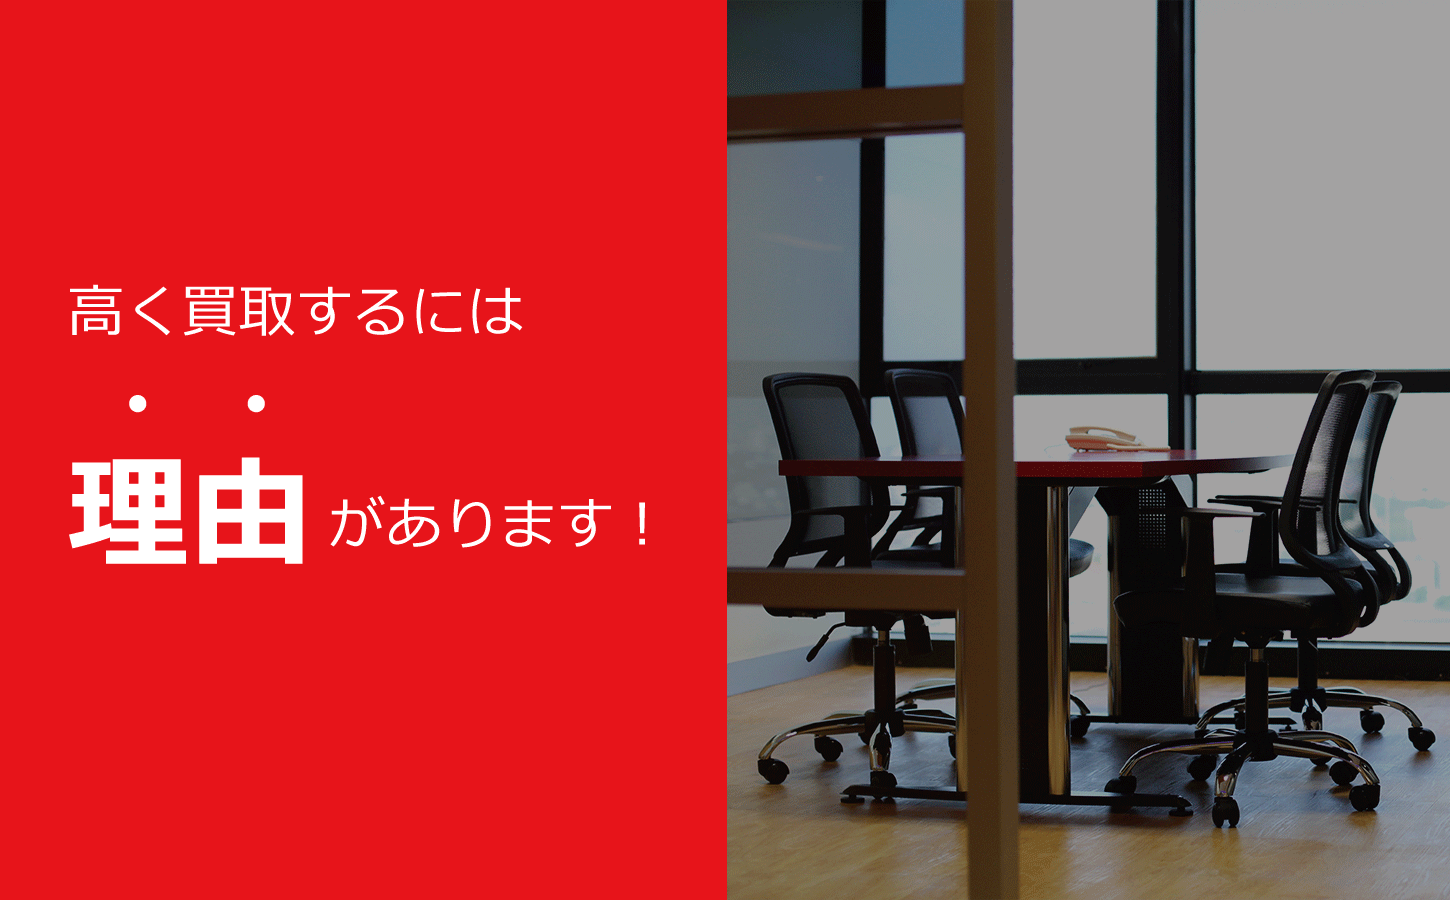 神戸市で事務機器やオフィス家具の買取は兵庫リサイクルジャパンにお任せください。